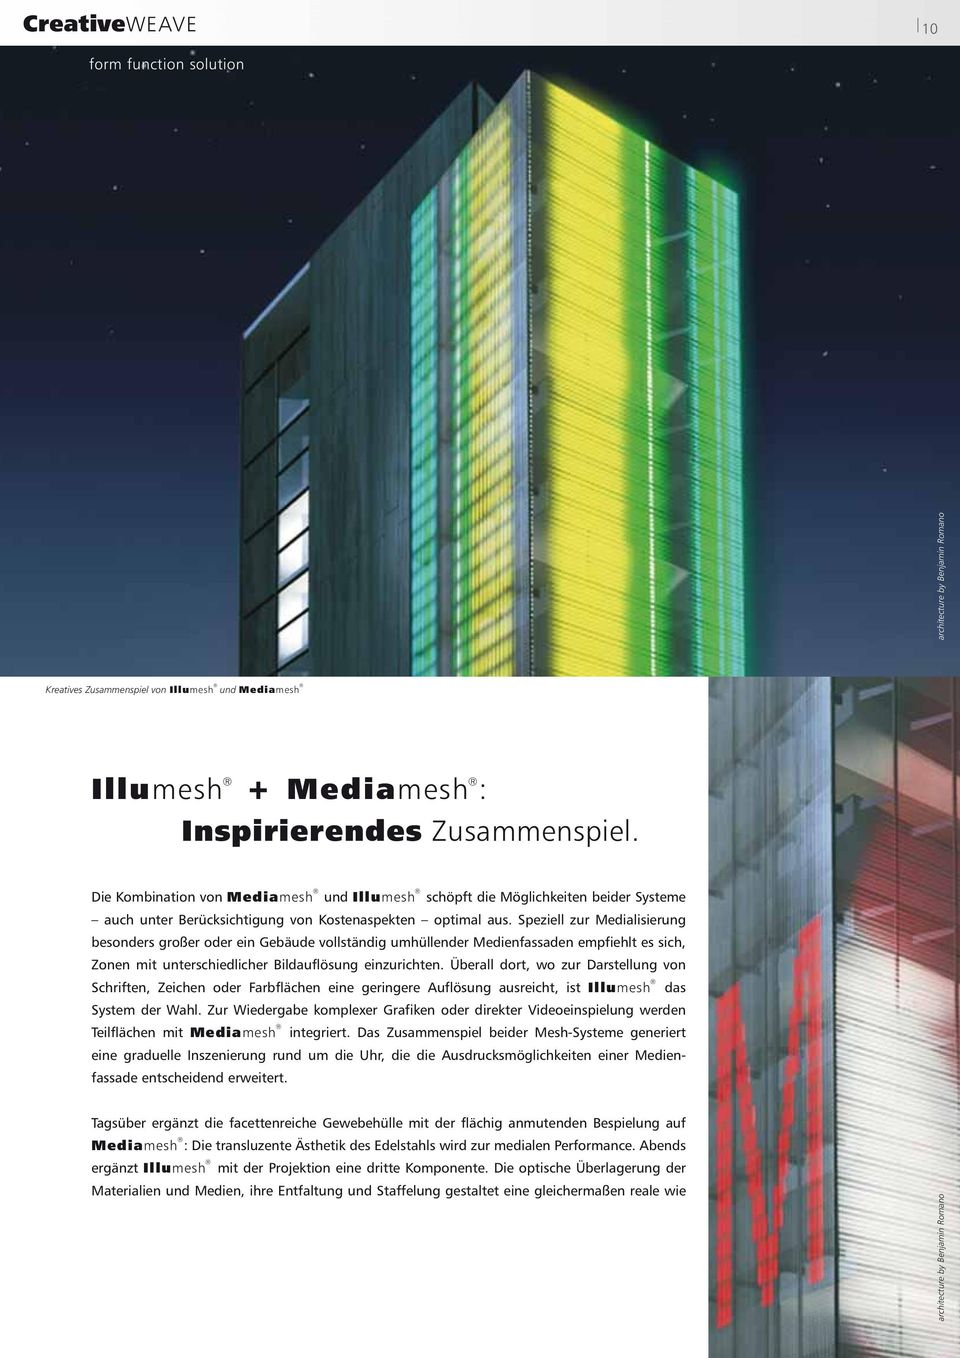 Speziell zur Medialisierung besonders großer oder ein Gebäude vollständig umhüllender Medienfassaden empfiehlt es sich, Zonen mit unterschiedlicher Bildauflösung einzurichten.